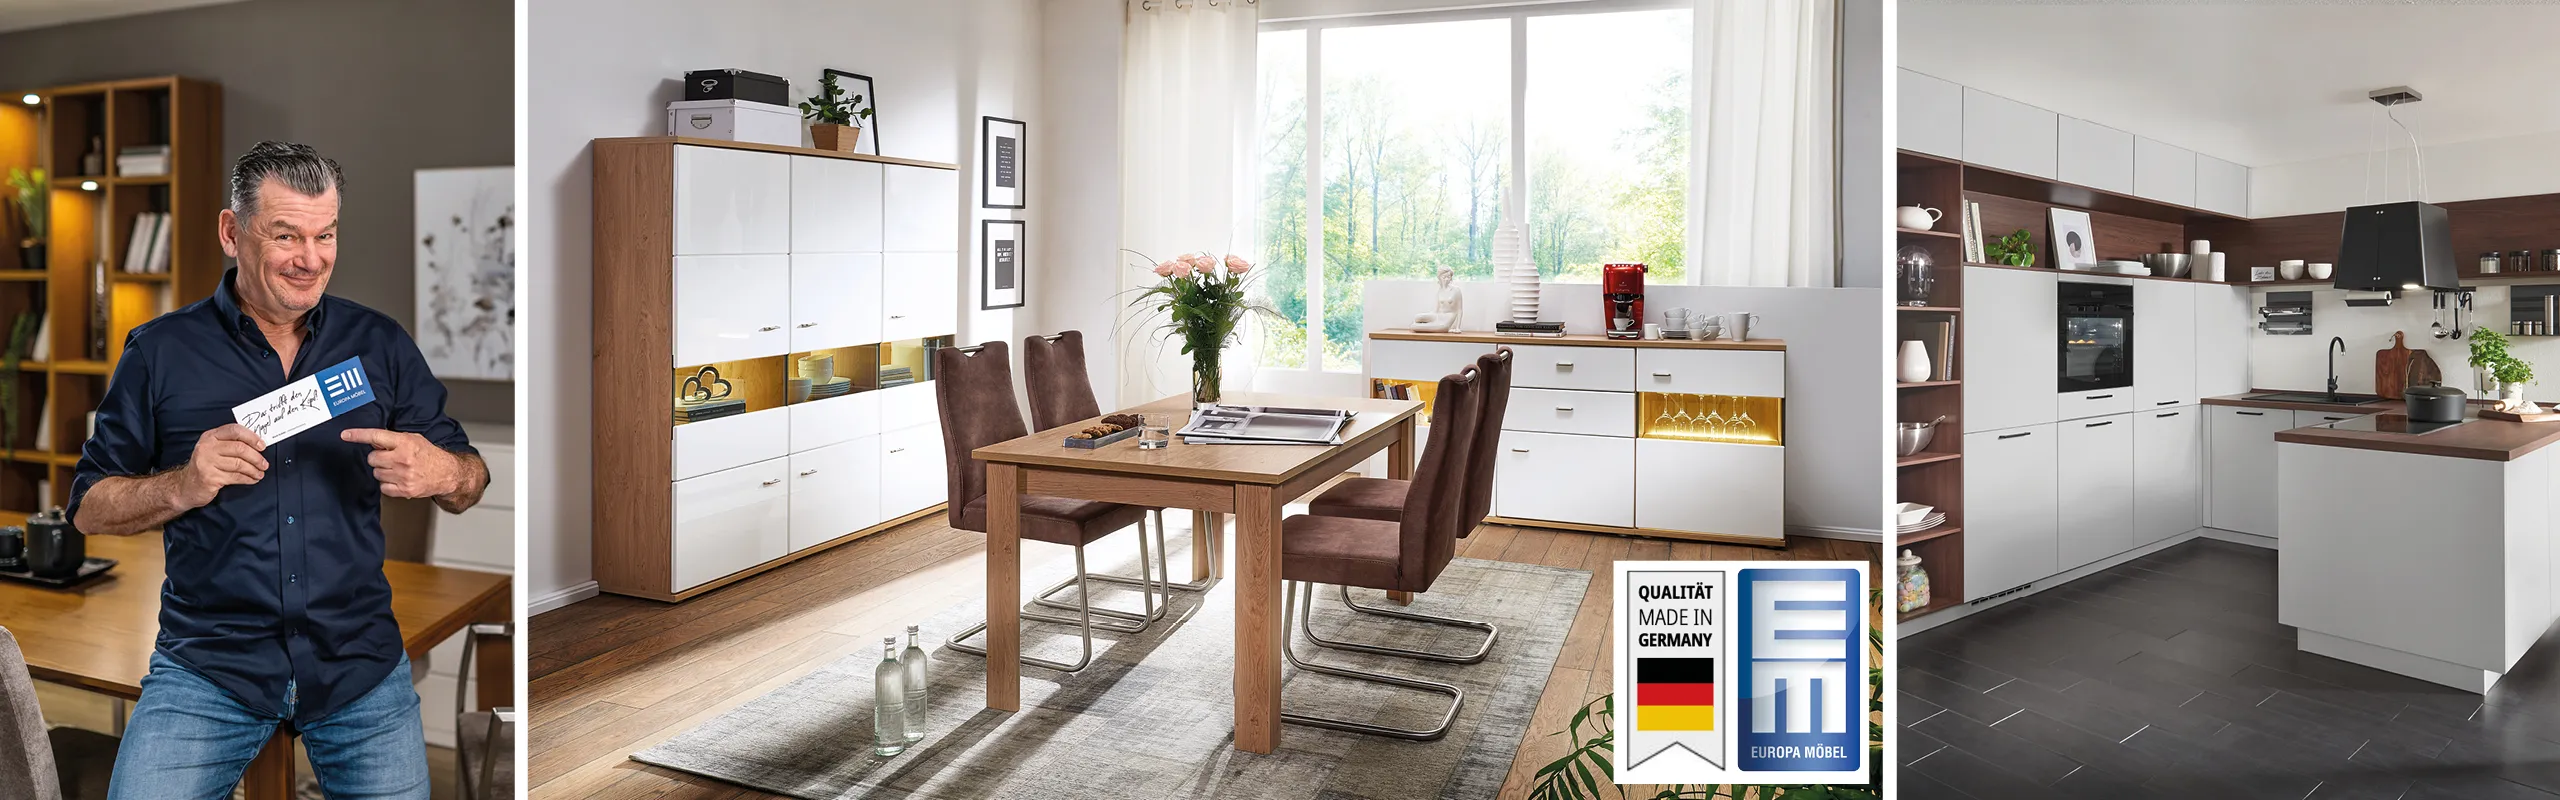 Mark Kühler mit EMC-Schild, Esszimmereinrichtung mit Tisch, Stühlen, Highboard und Sideboard und Küche mit weißen Küchenfronten.